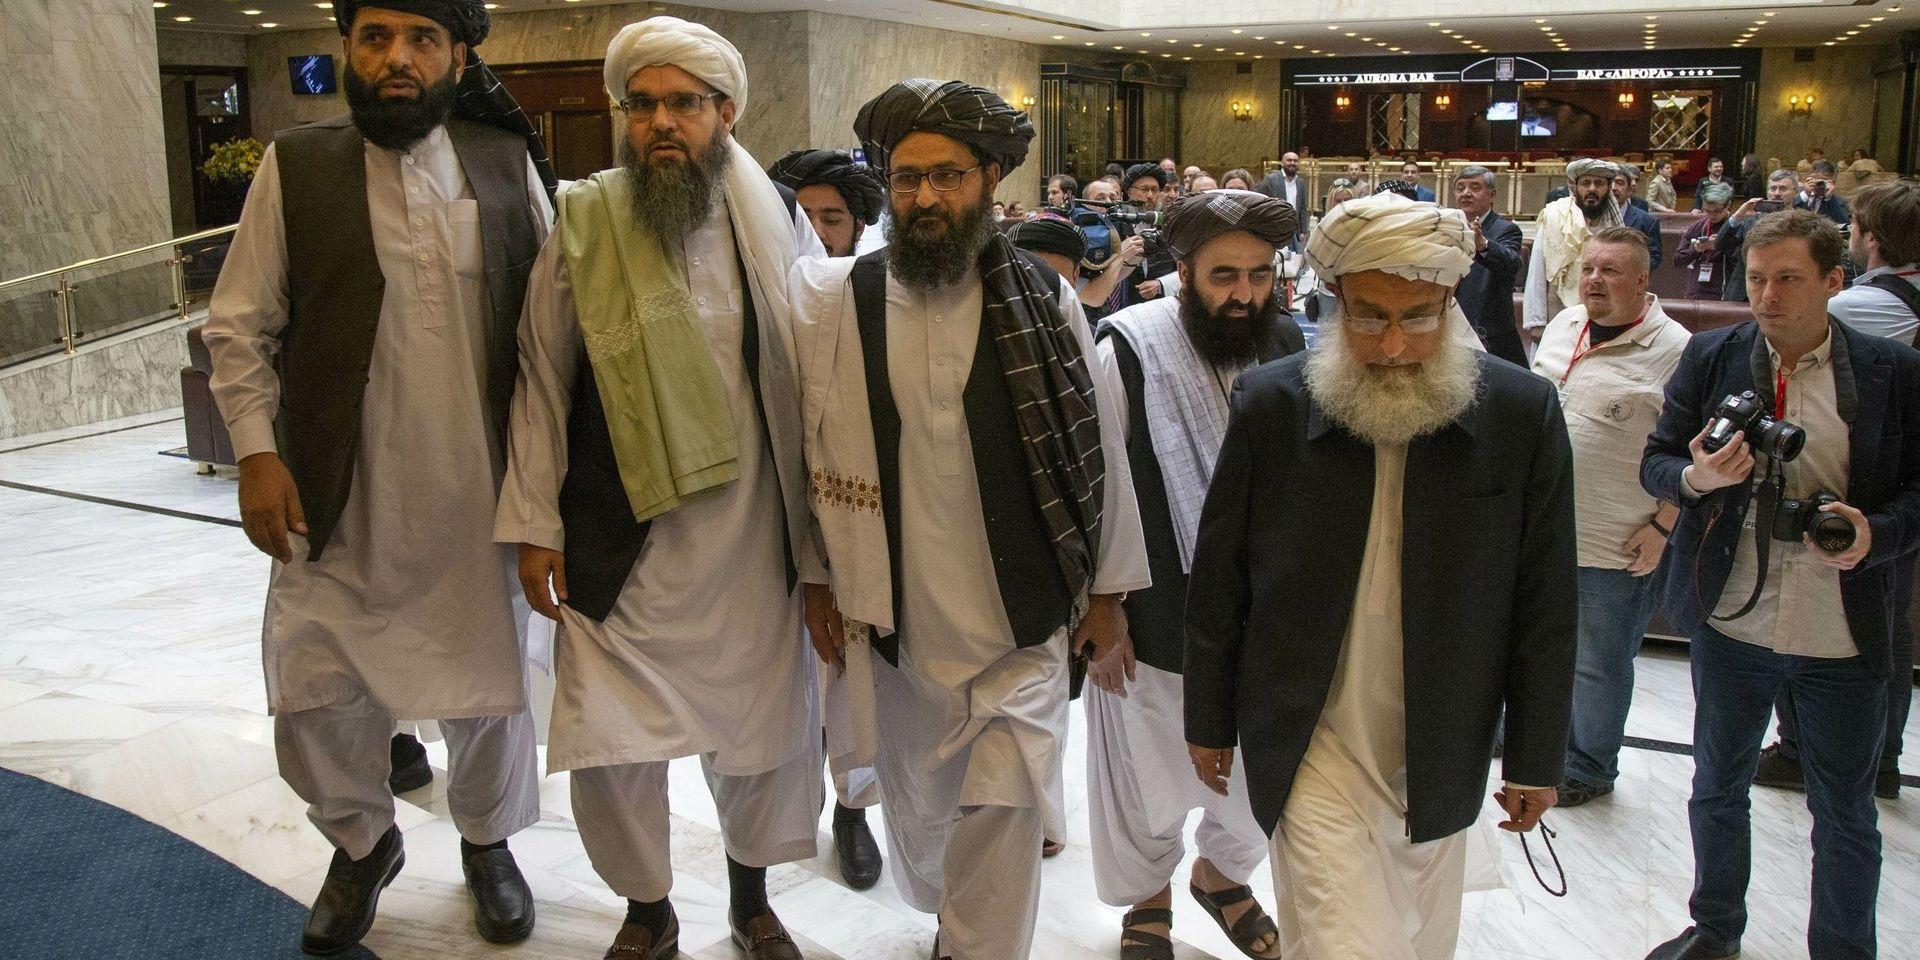 Talibanerna anländer till förhandling i Moskva i maj i år. I mitten syns mulla Abdul Ghani Baradar, talibanernas högste politiske ledare. Förhandlingarna dödförklarades av USA i början av september.